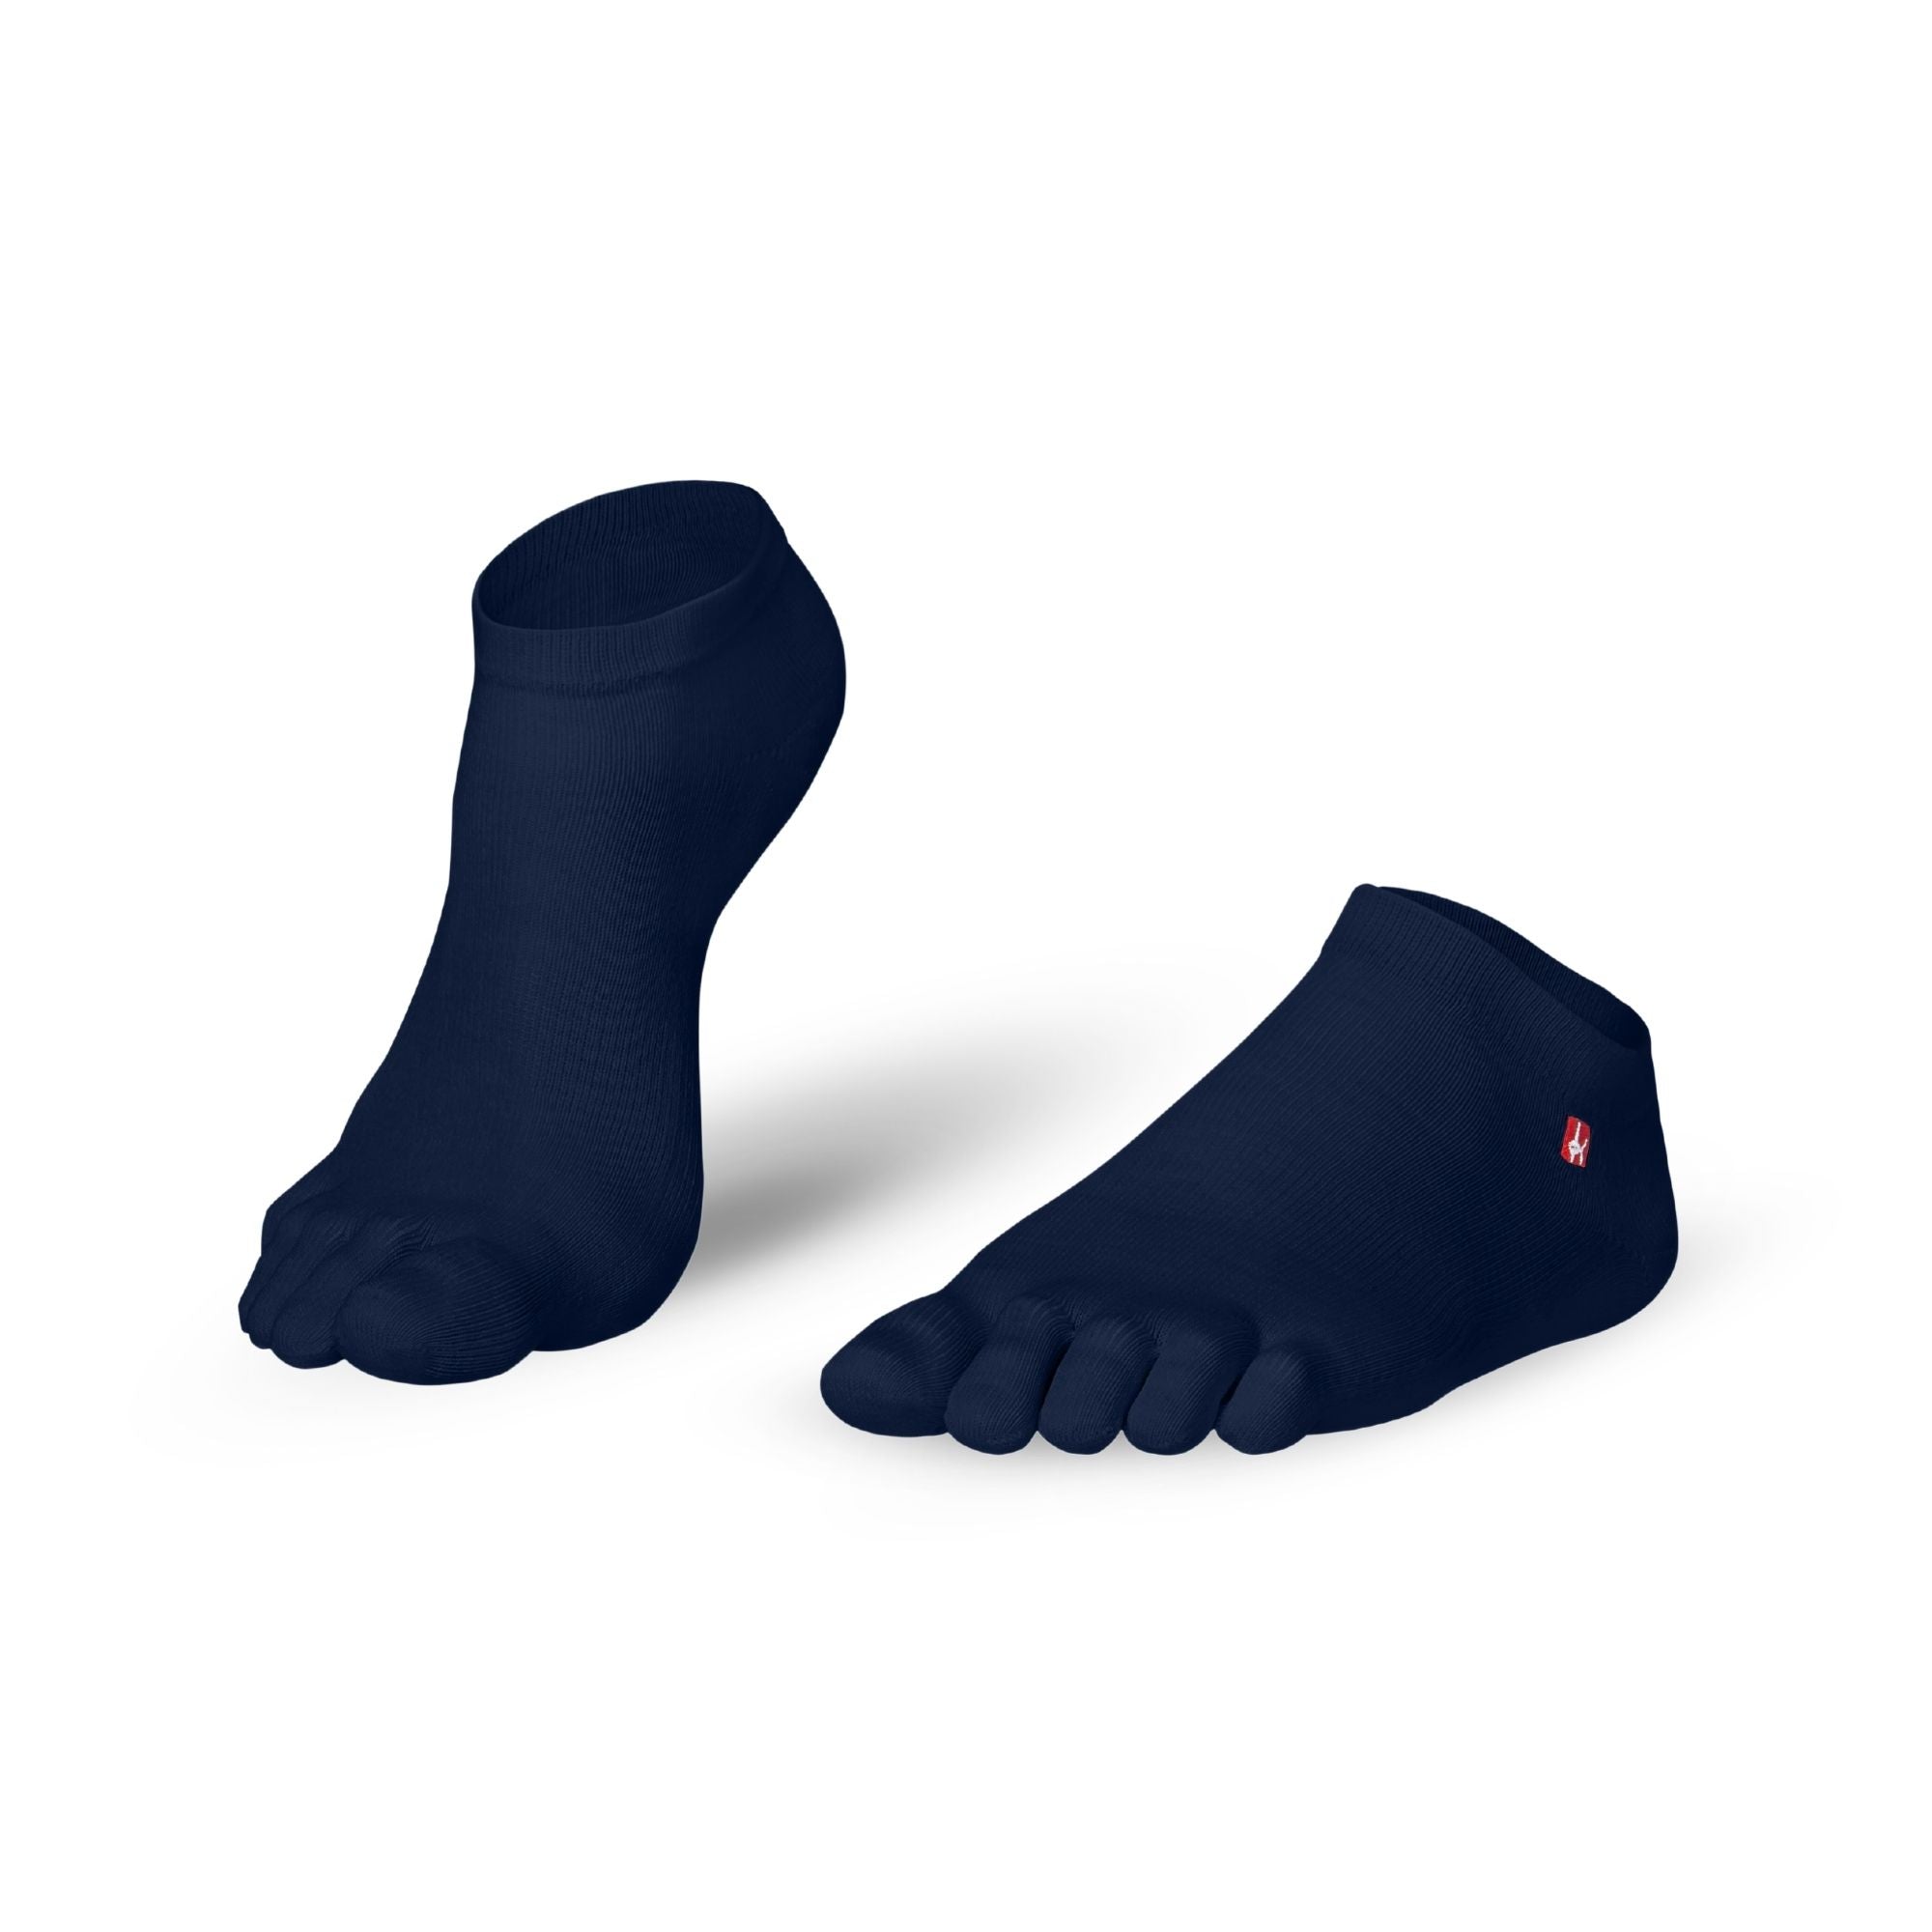 Zehensocken Coolmax Sneaker von Knitido Track & Trail ultralite fresh in navy